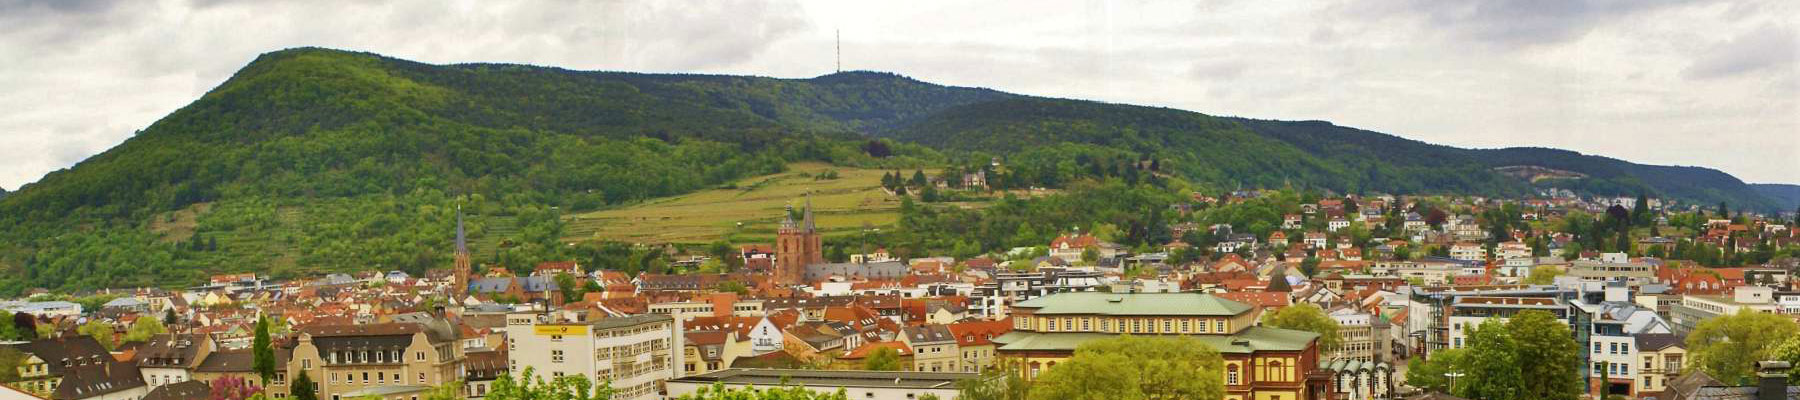 Ferienwohnungen - Sehnke Neustadt an der Weinstrasse – Lage und Umgebung